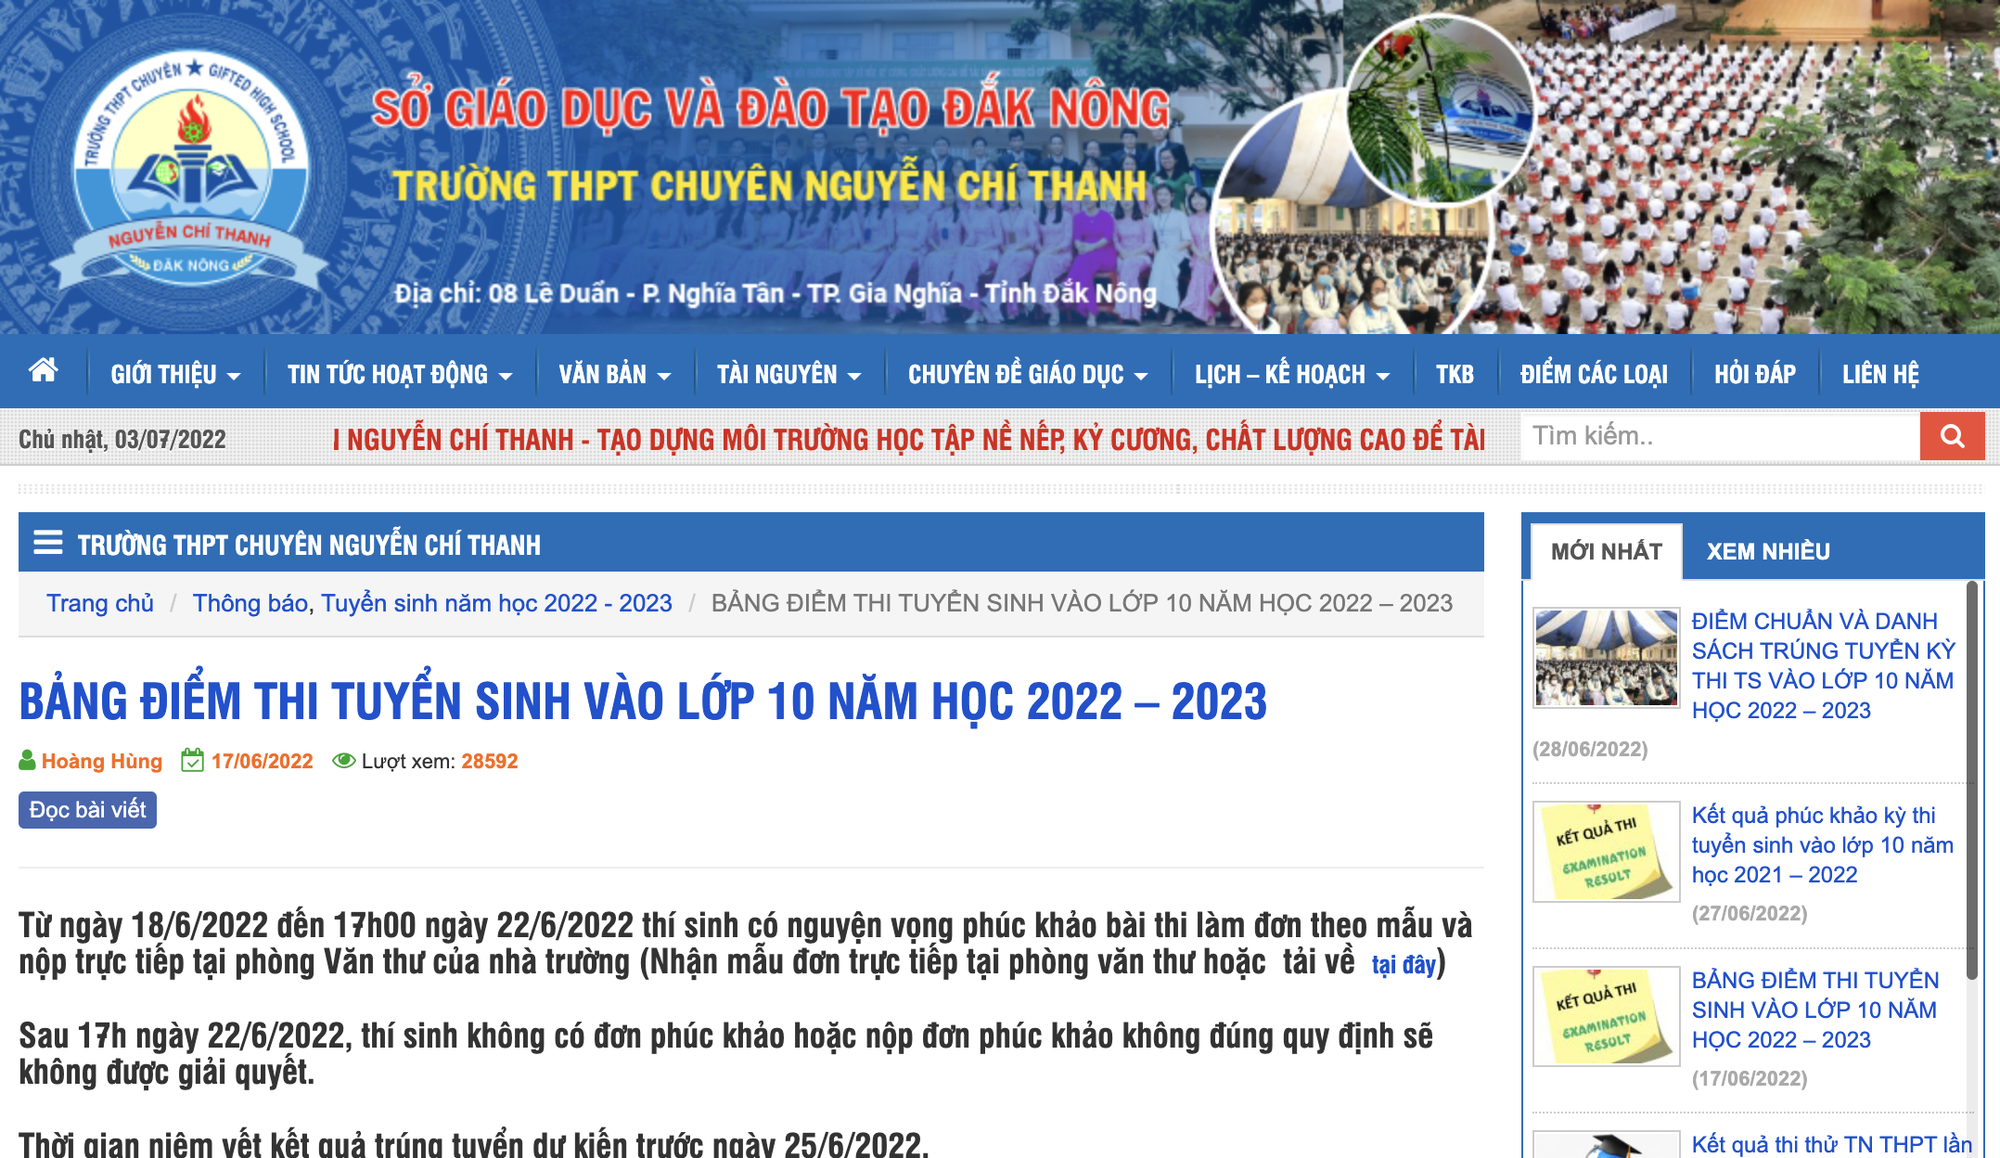 Điểm thi vào lớp 10 năm 2022 của Hà Nội và một số tỉnh thành: Dự báo sẽ tăng  - Ảnh 4.